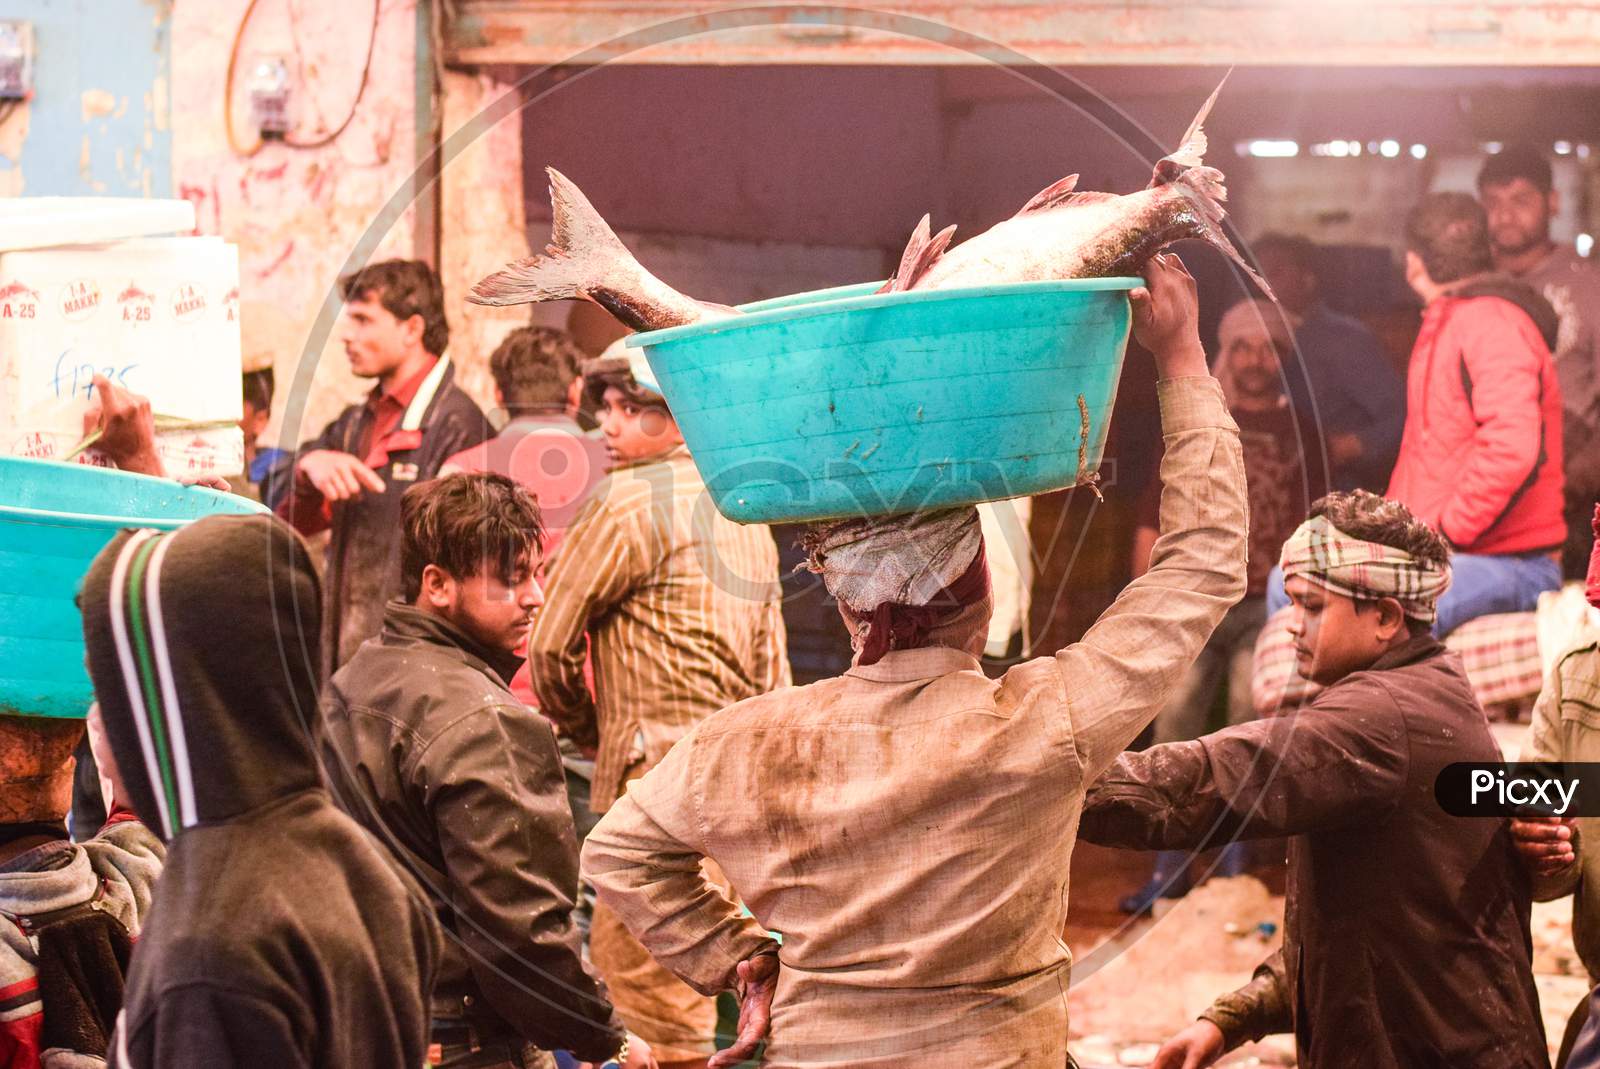 Delhi / India - June 01, 2019: Man Carrying Fish n a tub in a fish market in Delhi